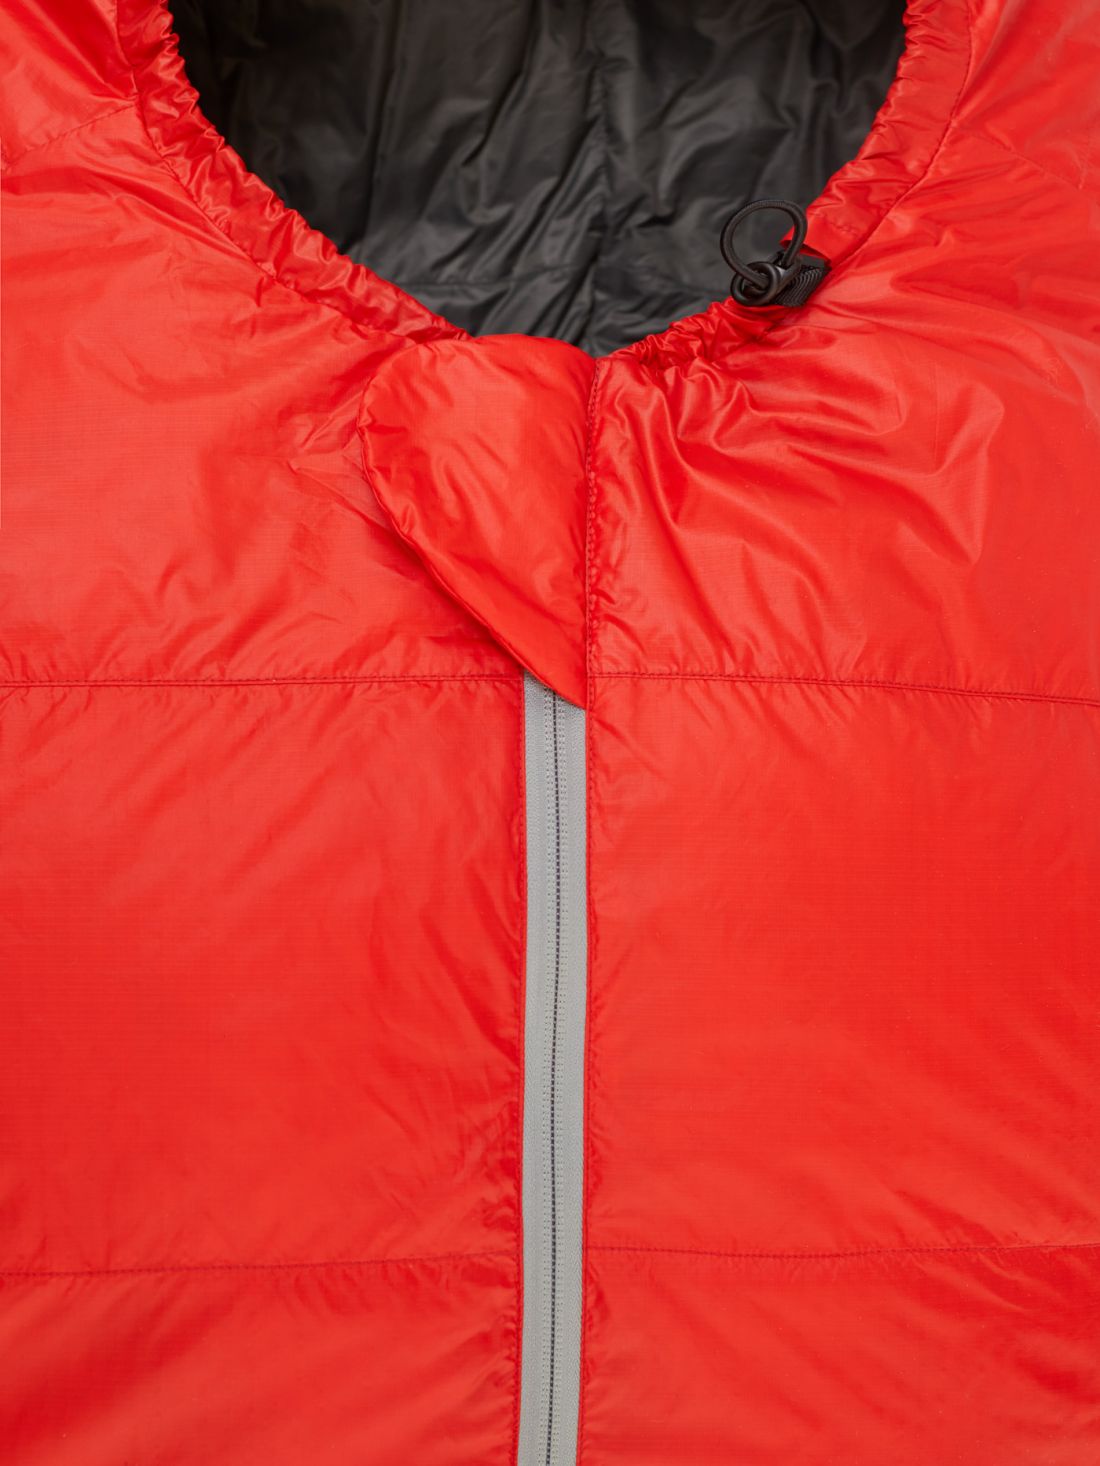 Облегченный спальный мешок Bask Halo -30C (комфорт -10 °C)